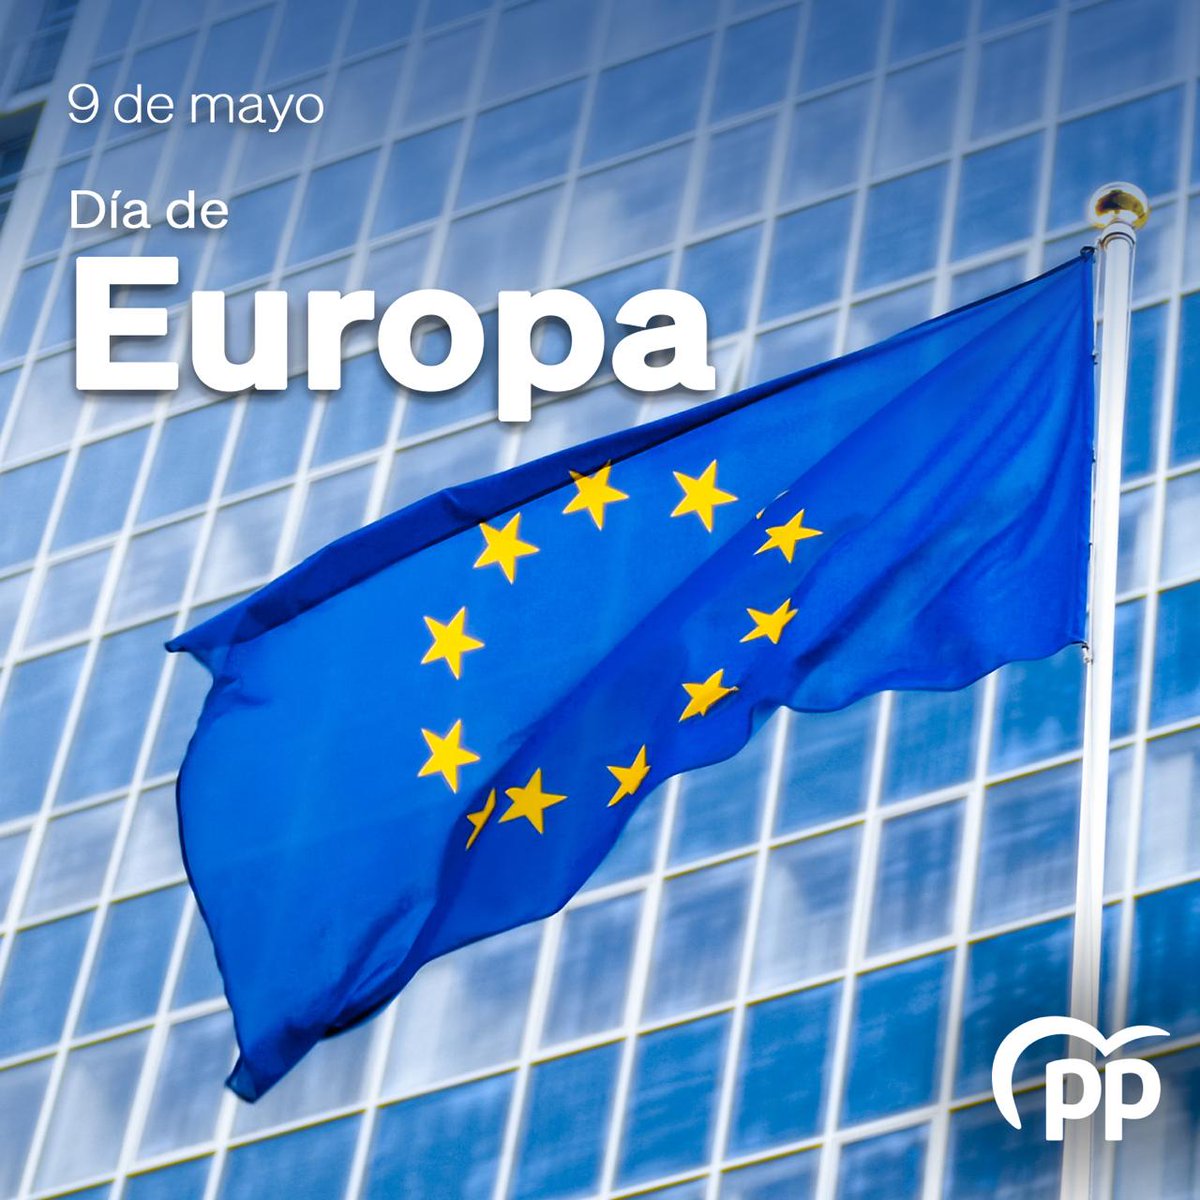 🇪🇺 Hoy celebramos el Día de Europa coincidiendo con la Declaración Schuman de la que se cumplen 74 años. “La paz mundial no puede salvaguardarse sin unos esfuerzos creadores equiparables a los peligros que la amenazan”. Feliz Día de Europa 🇪🇺